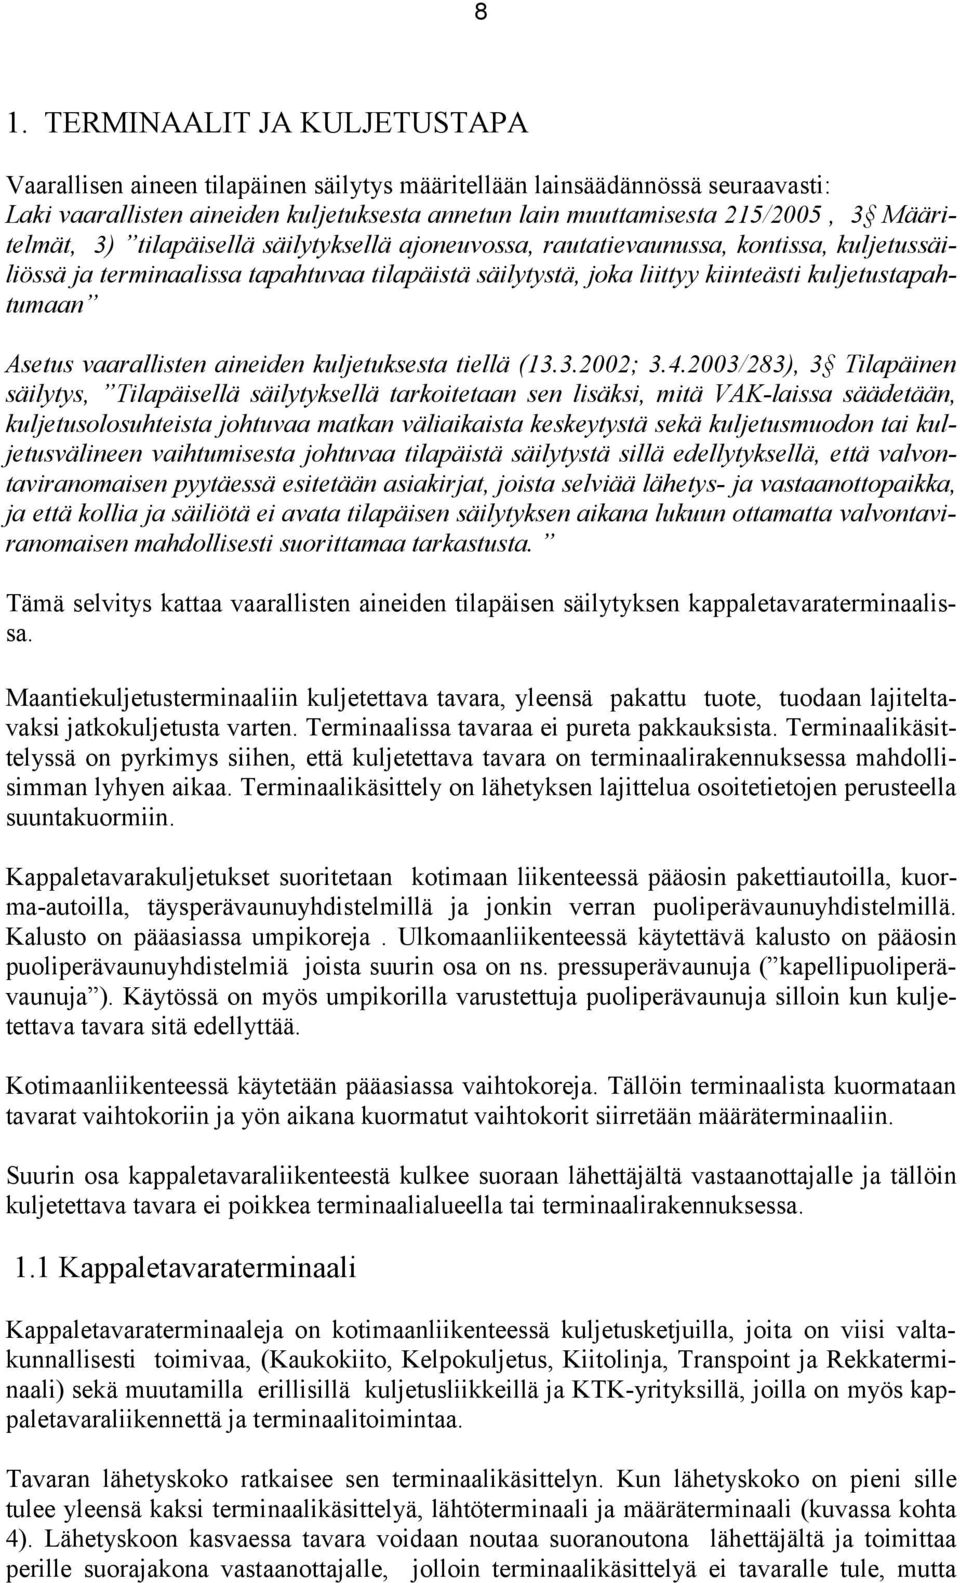 Asetus vaarallisten aineiden kuljetuksesta tiellä (13.3.2002; 3.4.